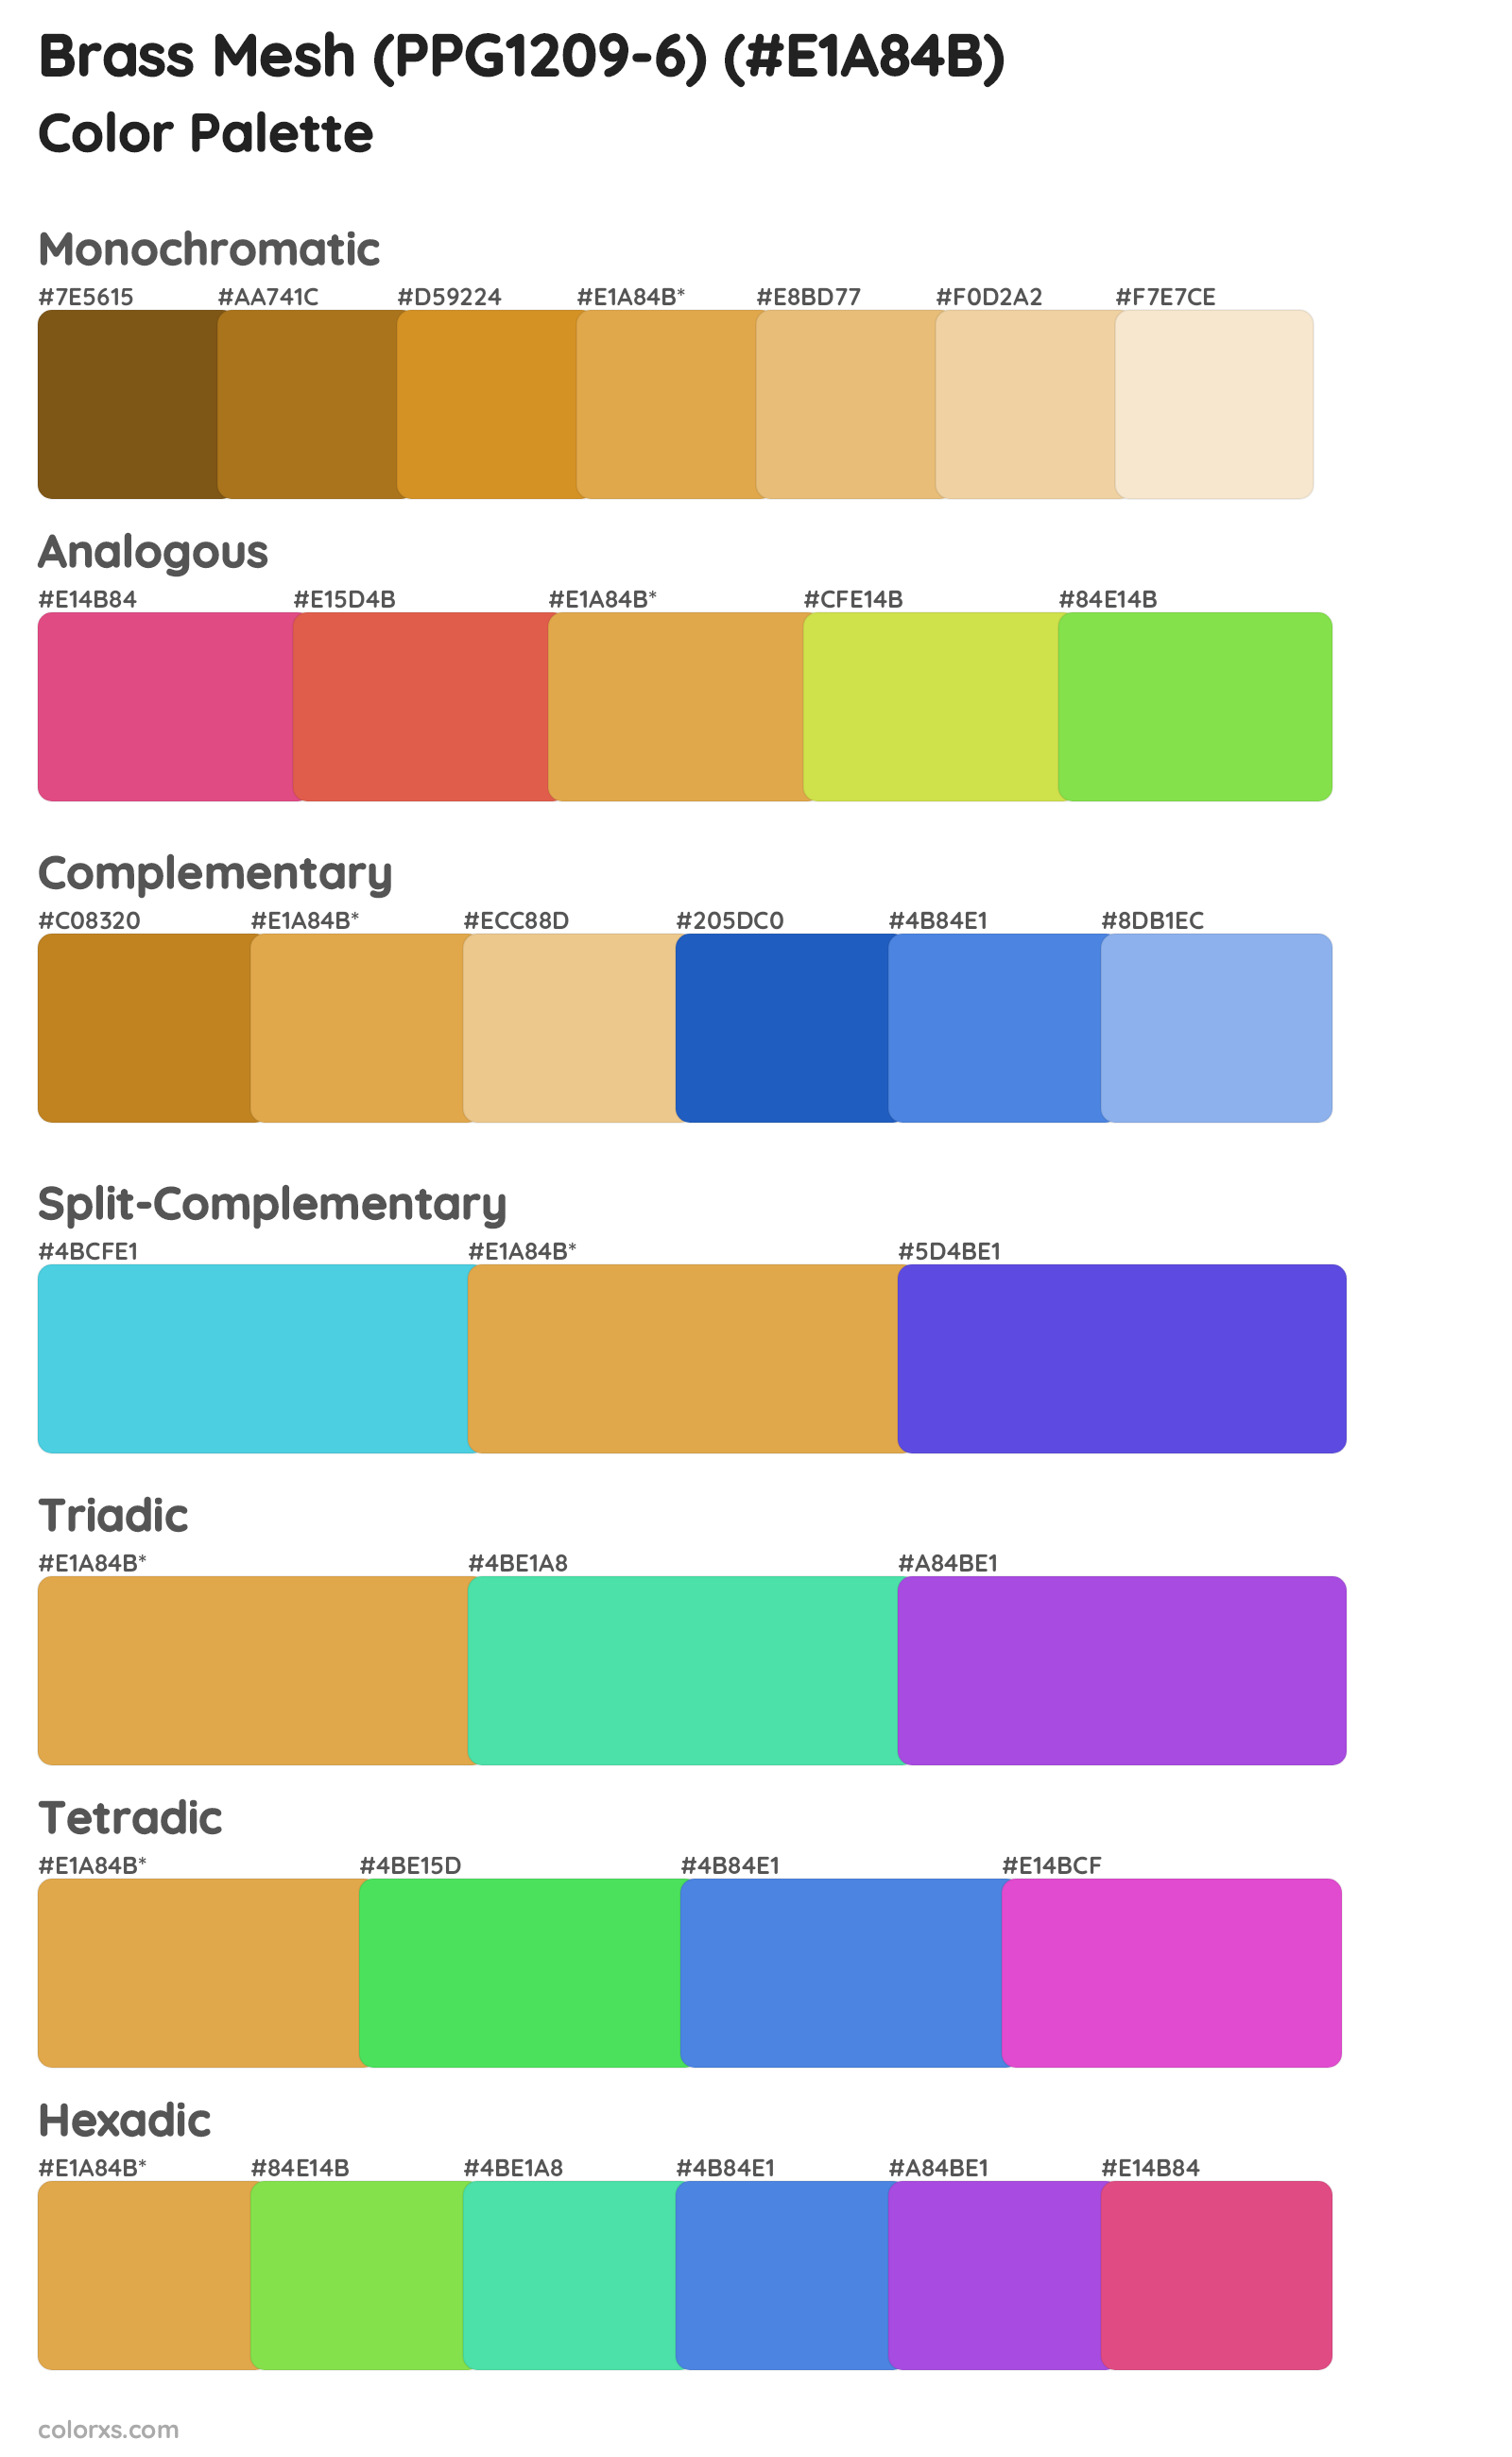 Brass Mesh (PPG1209-6) Color Scheme Palettes